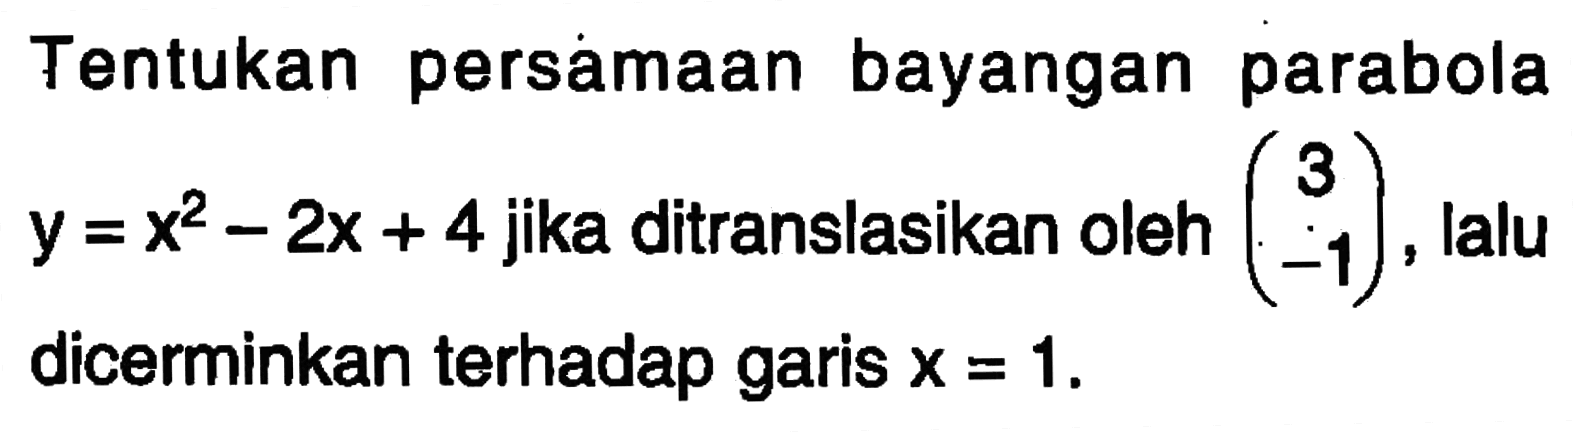 Tentukan persamaan bayangan parabola y=x^2-2x+4 jika ditranslasikan oleh (3 -1) lalu dicerminkan terhadap garis X = 1.